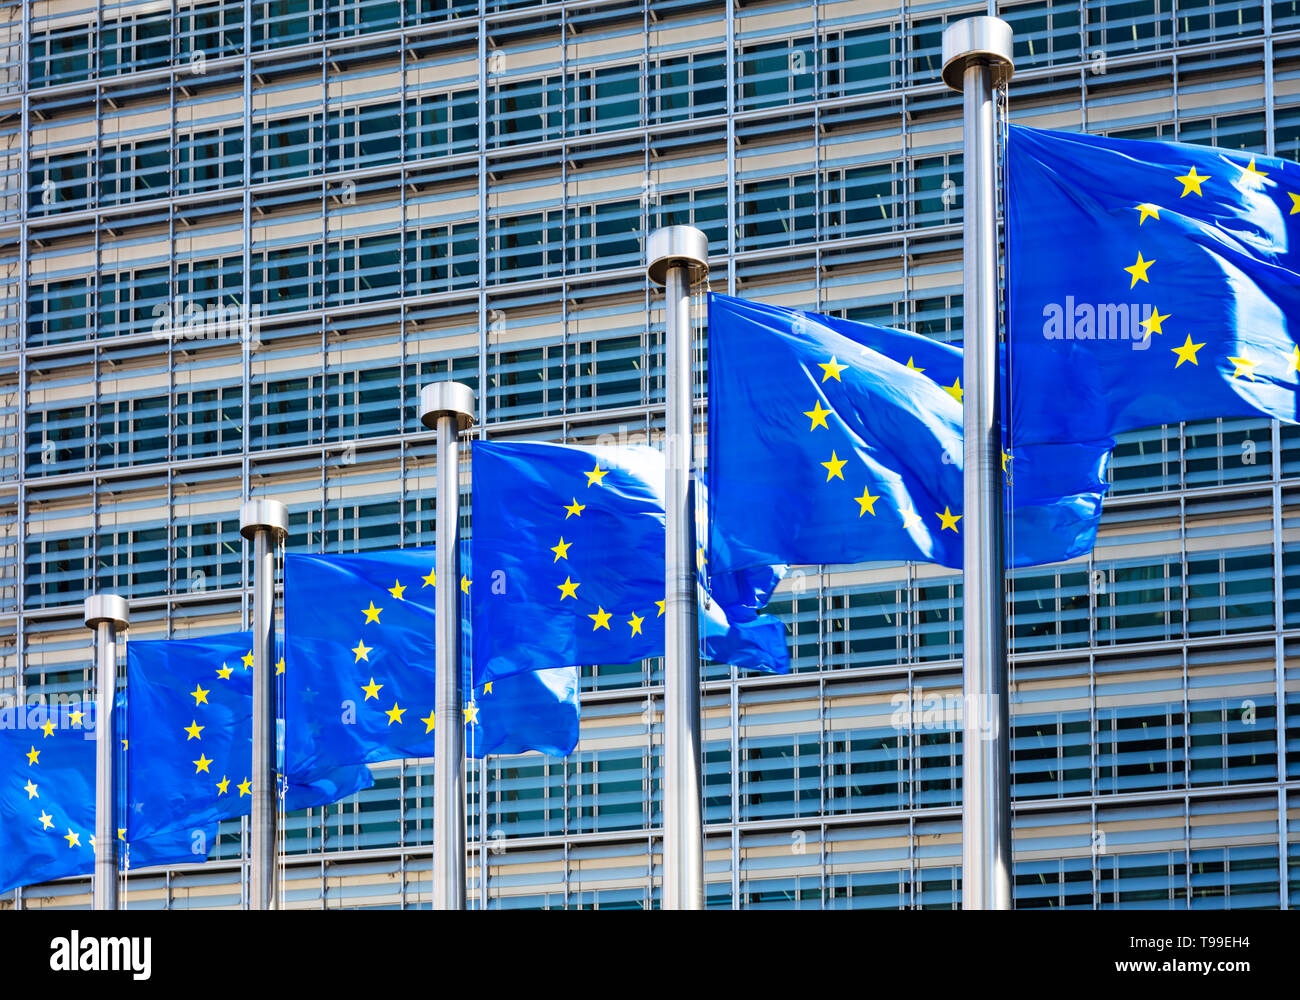 Drapeaux de l'UE de l'Europe à l'extérieur de la commission de l'UE Commission européenne bâtiment bâtiment Berlaymont, Bruxelles, Belgique, Union européenne, Europe Banque D'Images